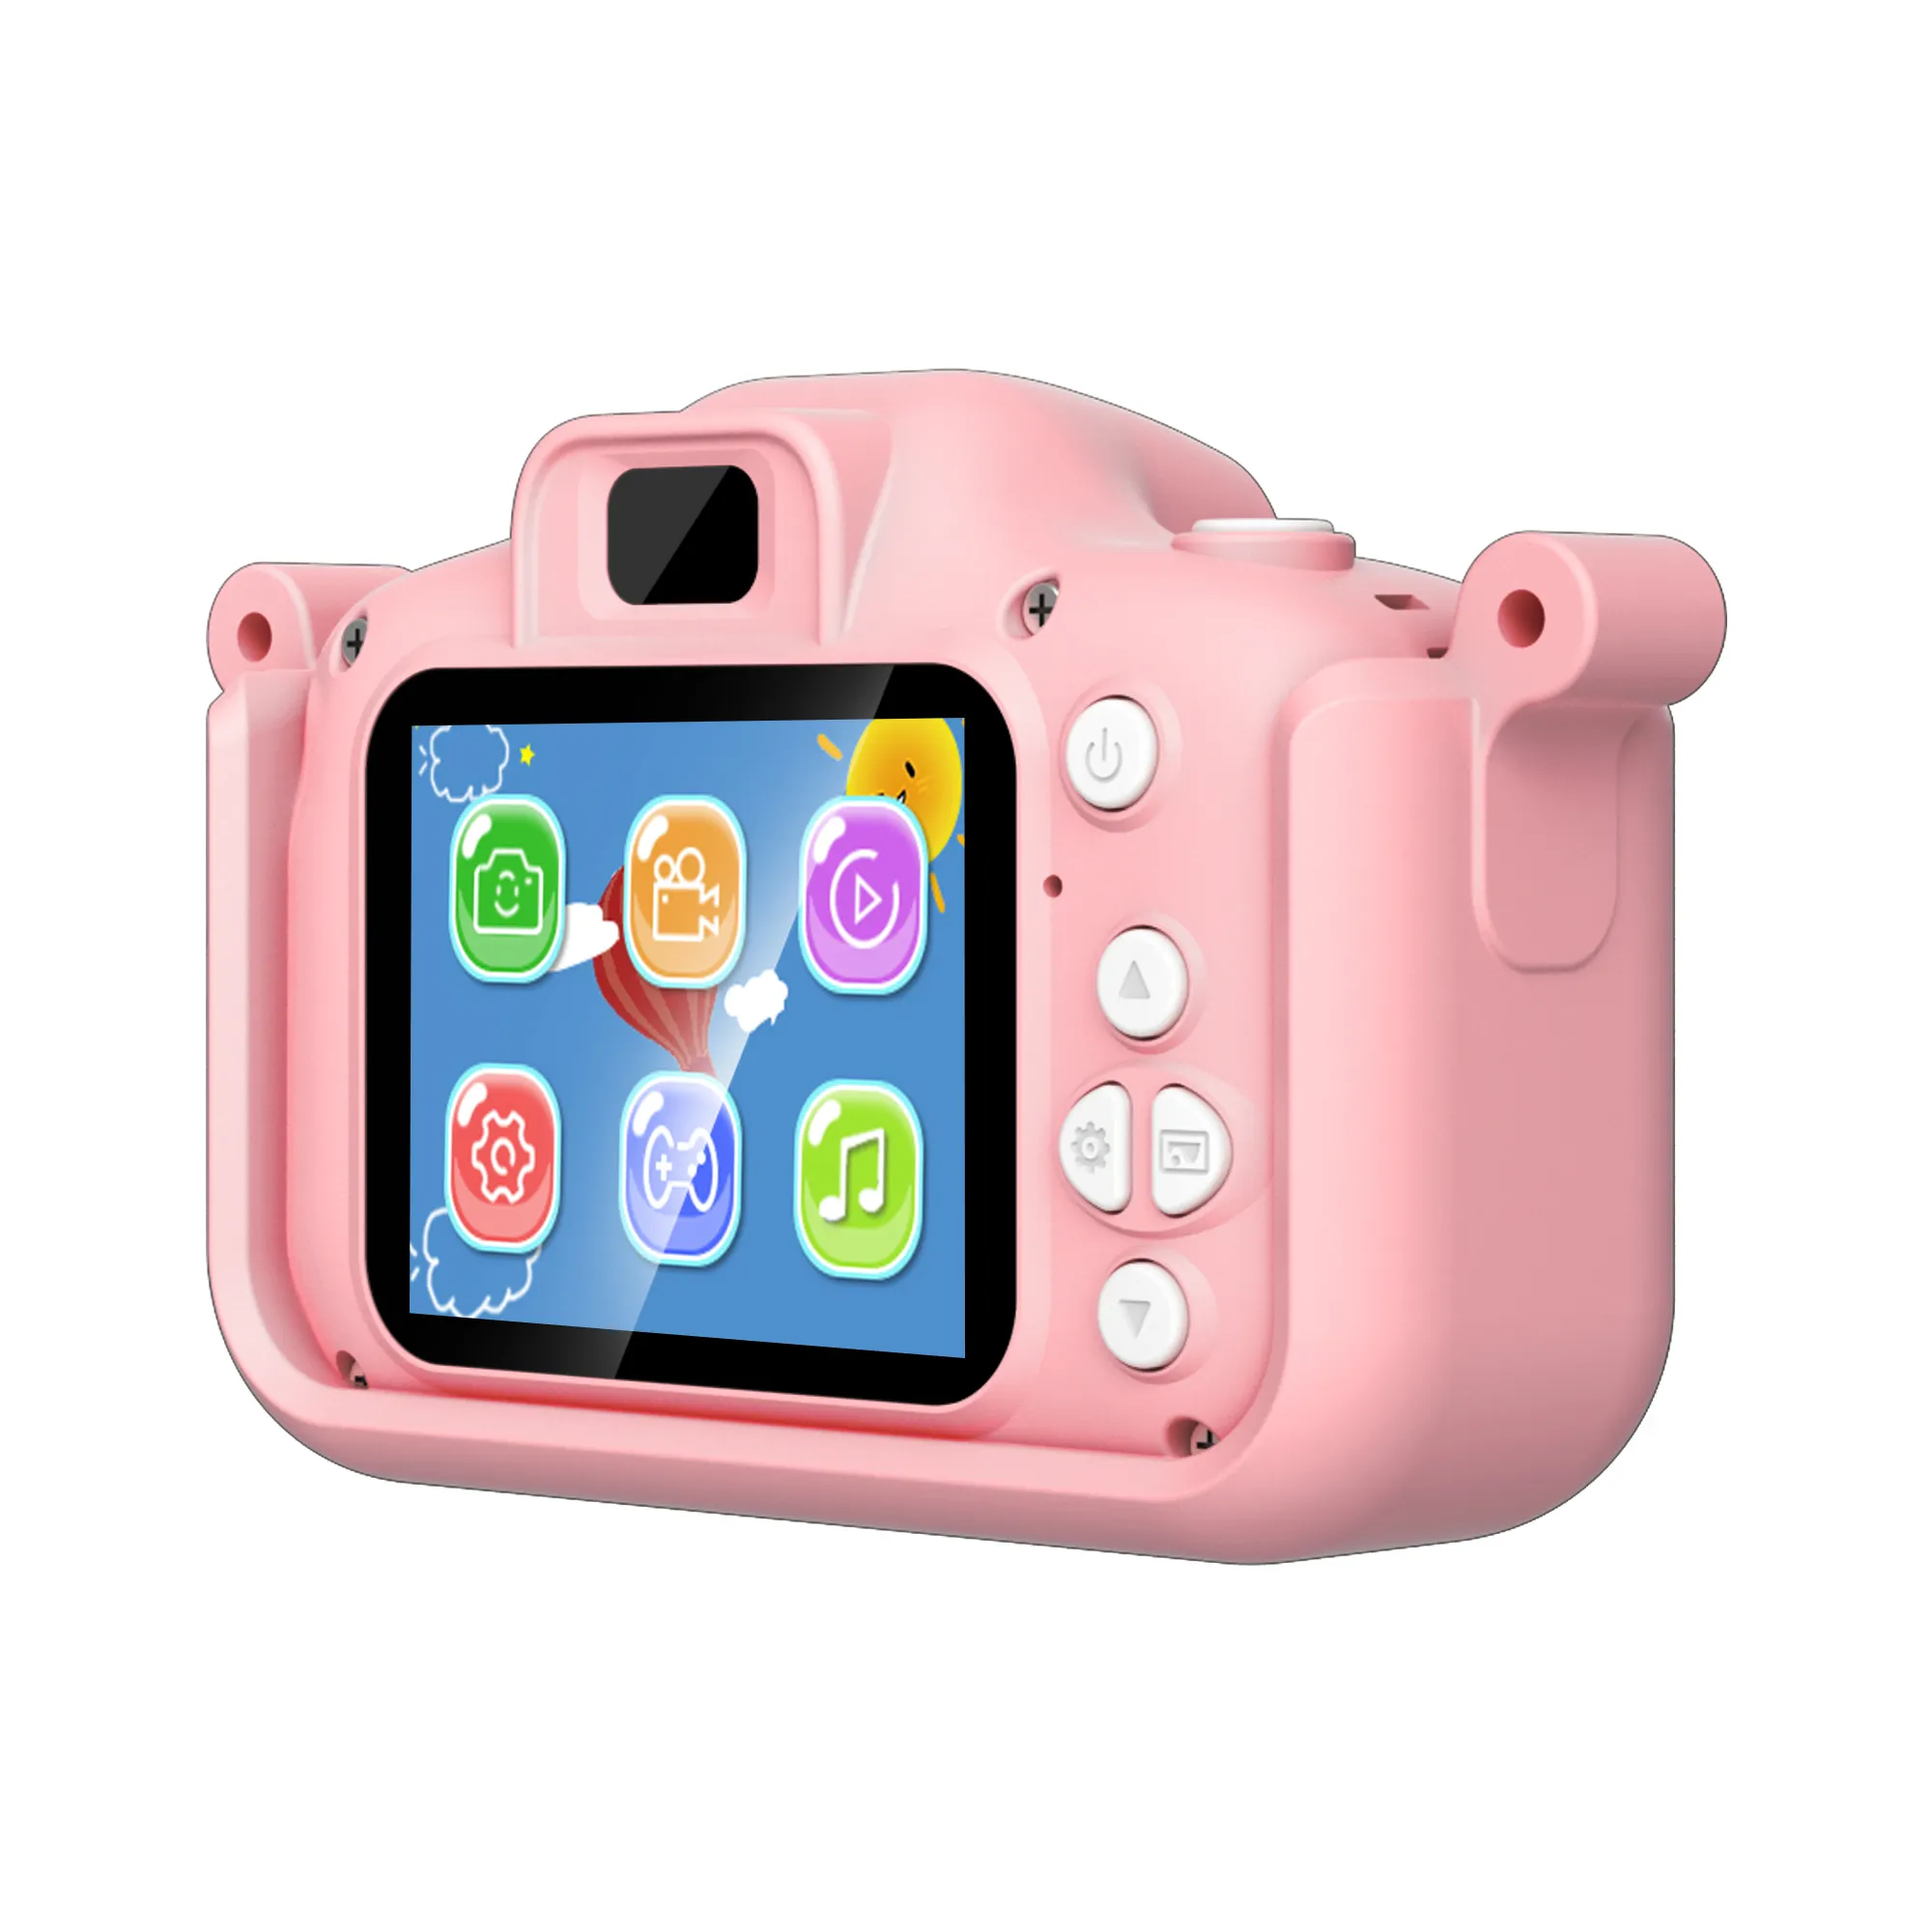 Nuova fotocamera per bambini Mini schermo Hd 1080p videocamera di proiezione giocattoli fotocamera digitale per bambini per bambini regali per bambini compleanno